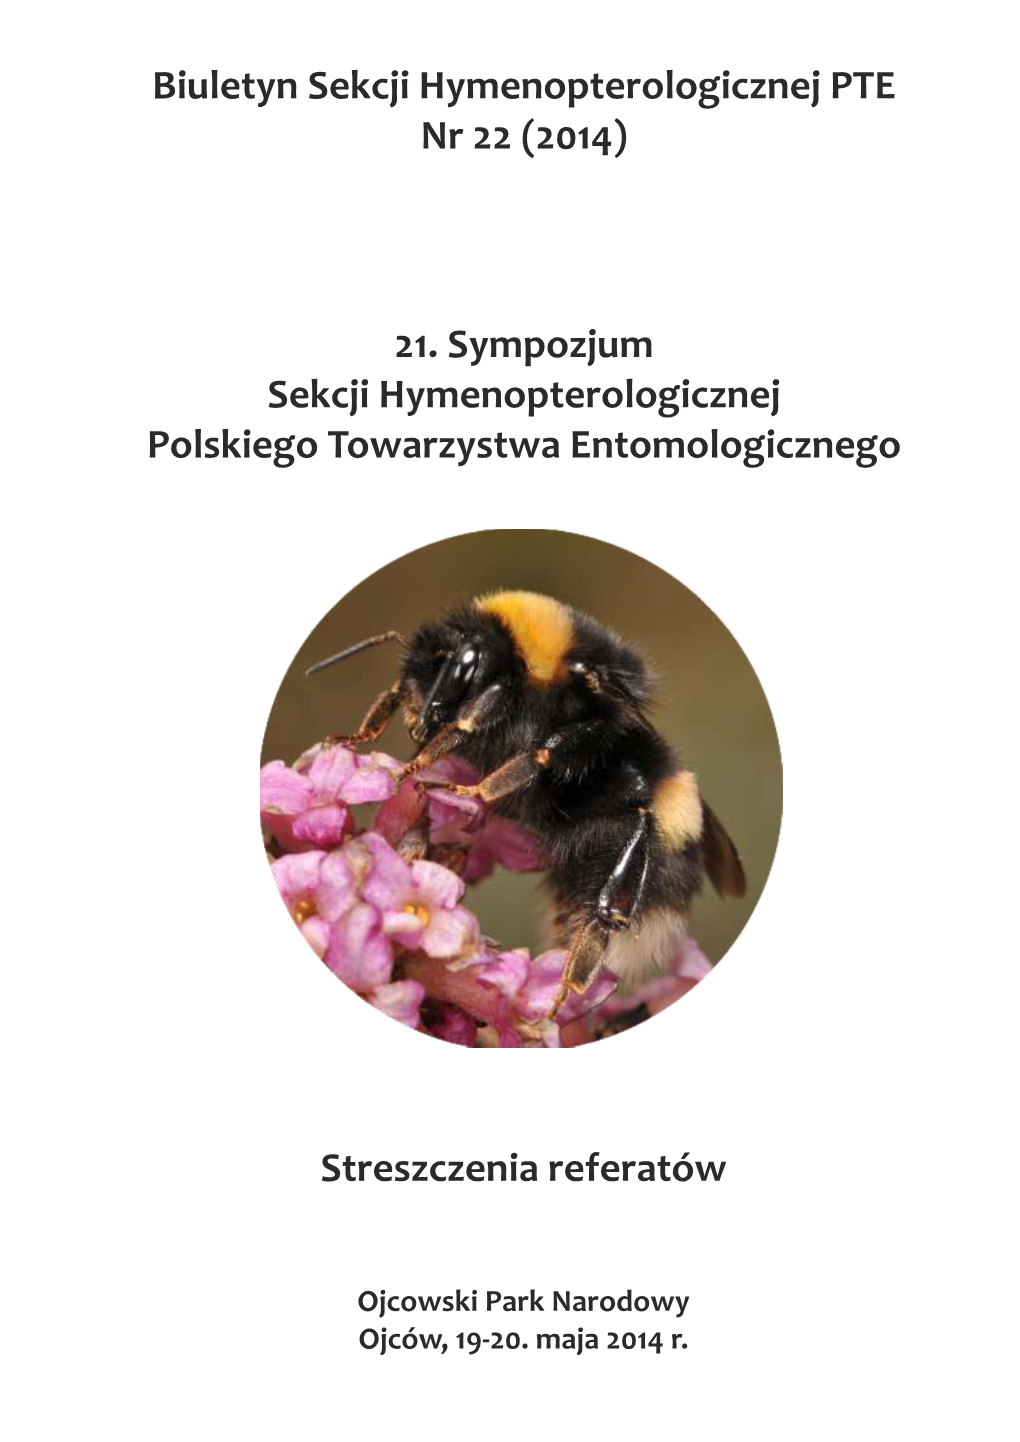 21. Sympozjum Sekcji Hymenopterologicznej Polskiego Towarzystwa Entomologicznego